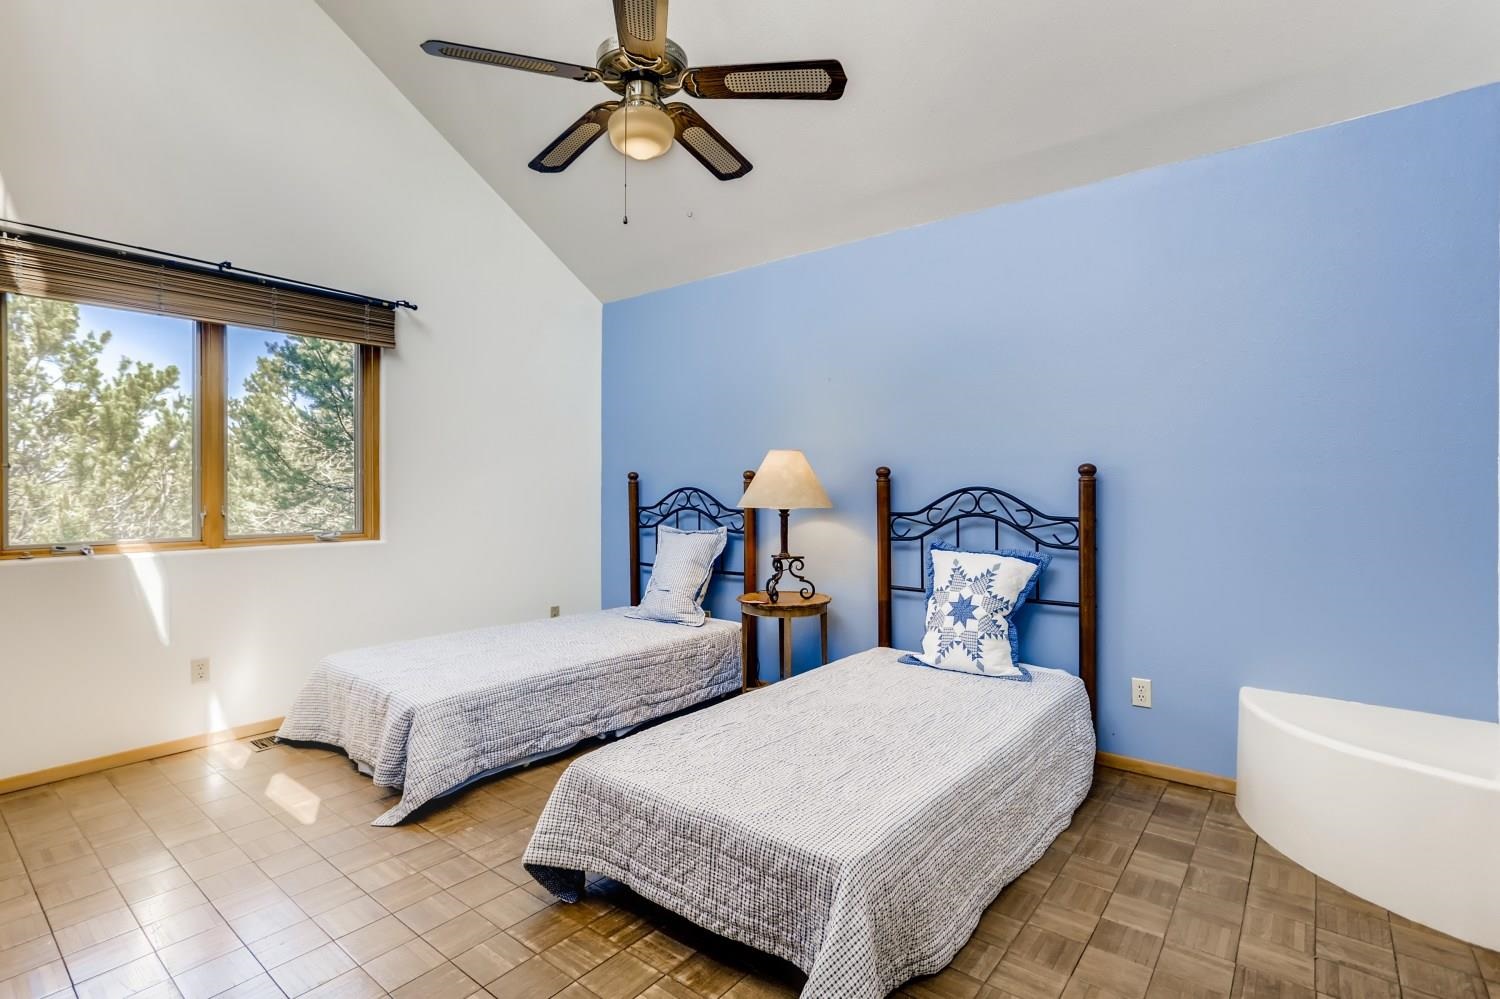 1070 Encantado, Santa Fe, New Mexico 87501-1086, 3 Bedrooms Bedrooms, ,3 BathroomsBathrooms,Residential,For Sale,1070 Encantado,202103829